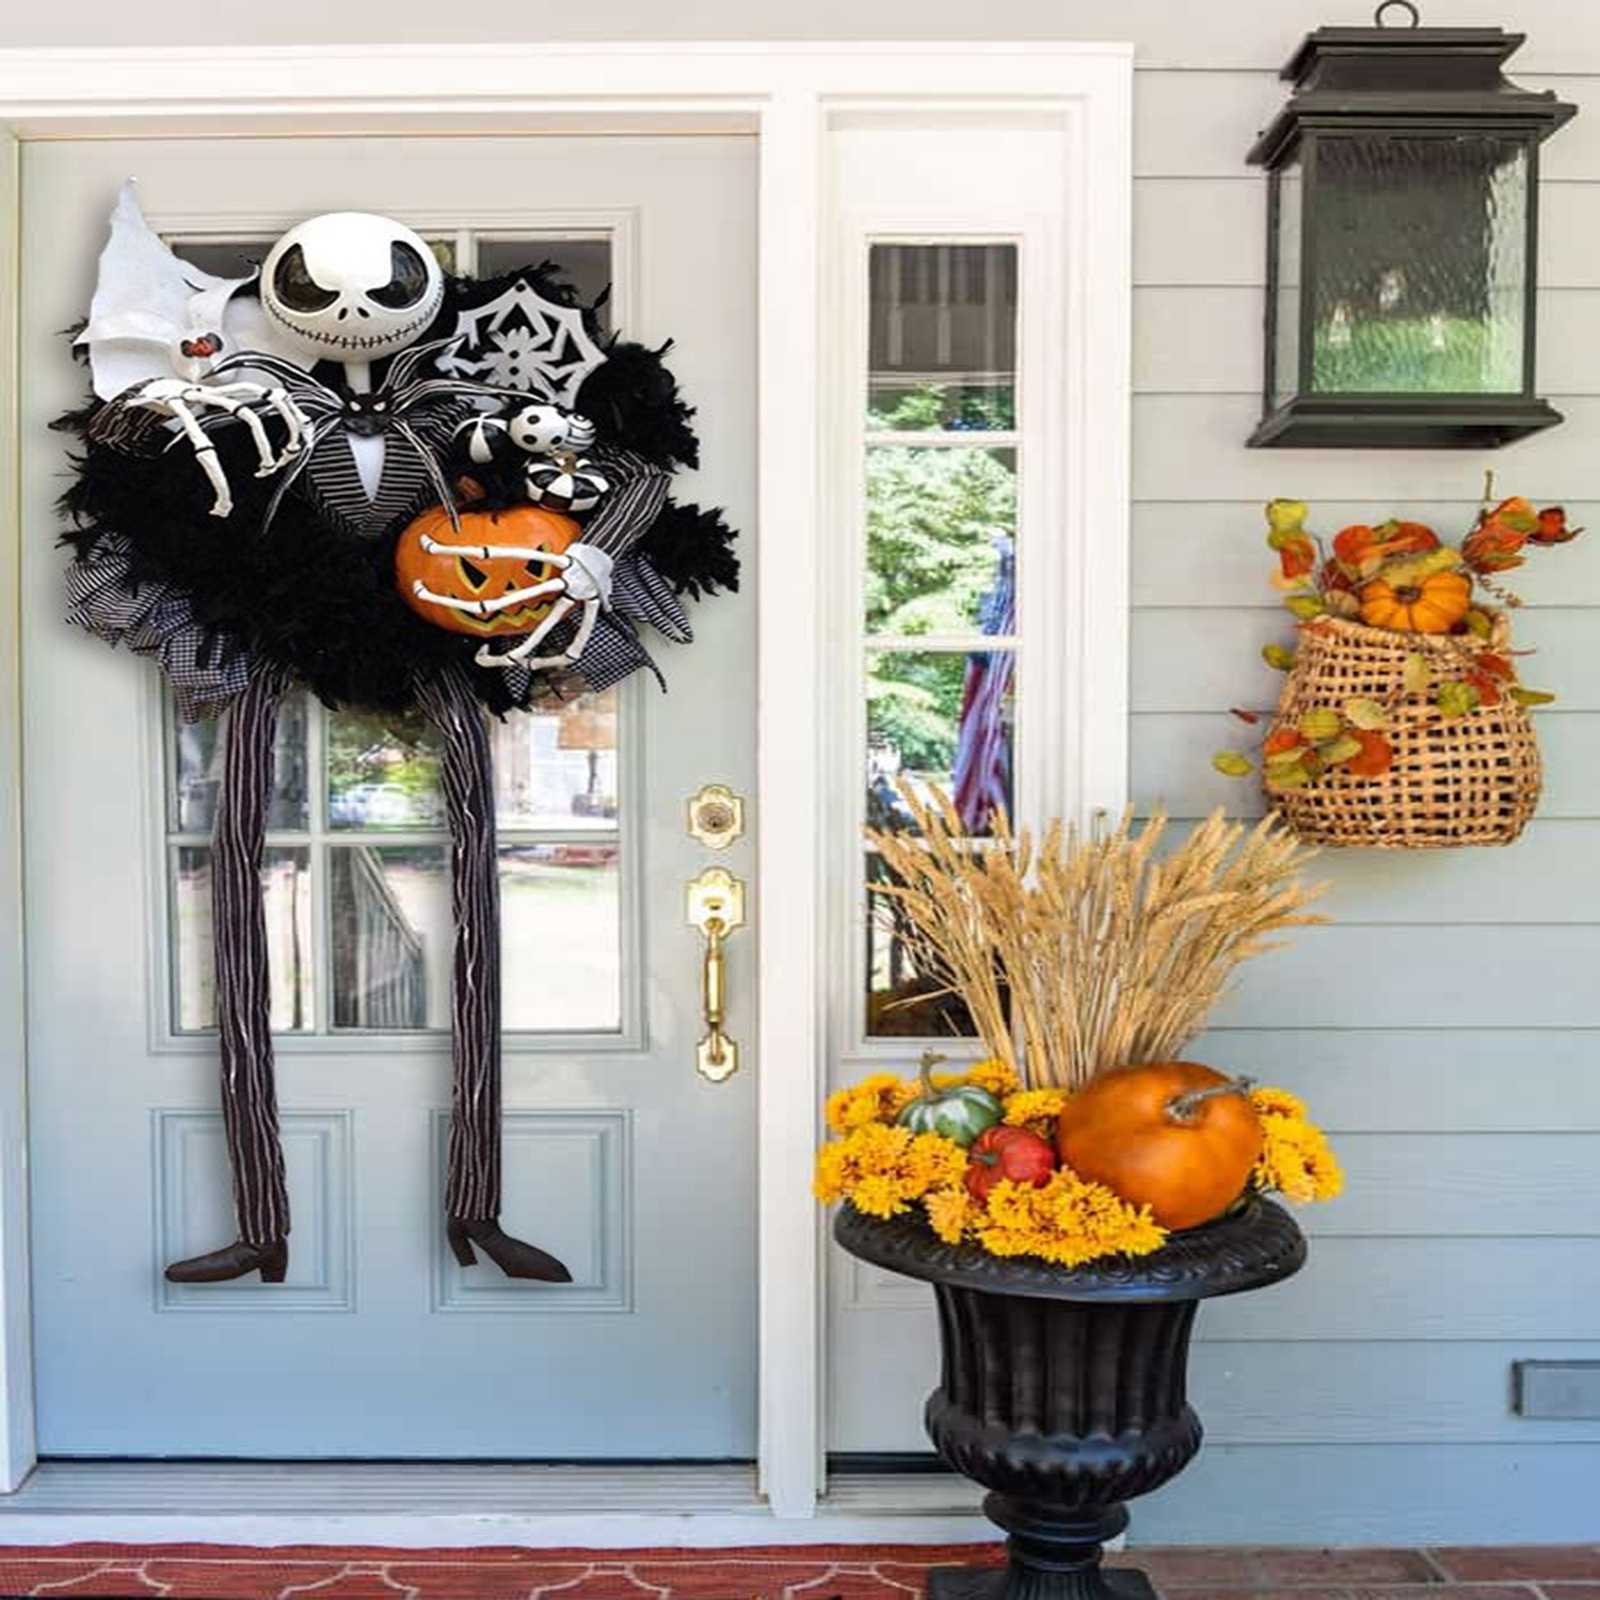 ハロウィン 飾り ハロウィンリース  壁掛け 玄関 ドア飾り 庭園飾り 仮装パーティー